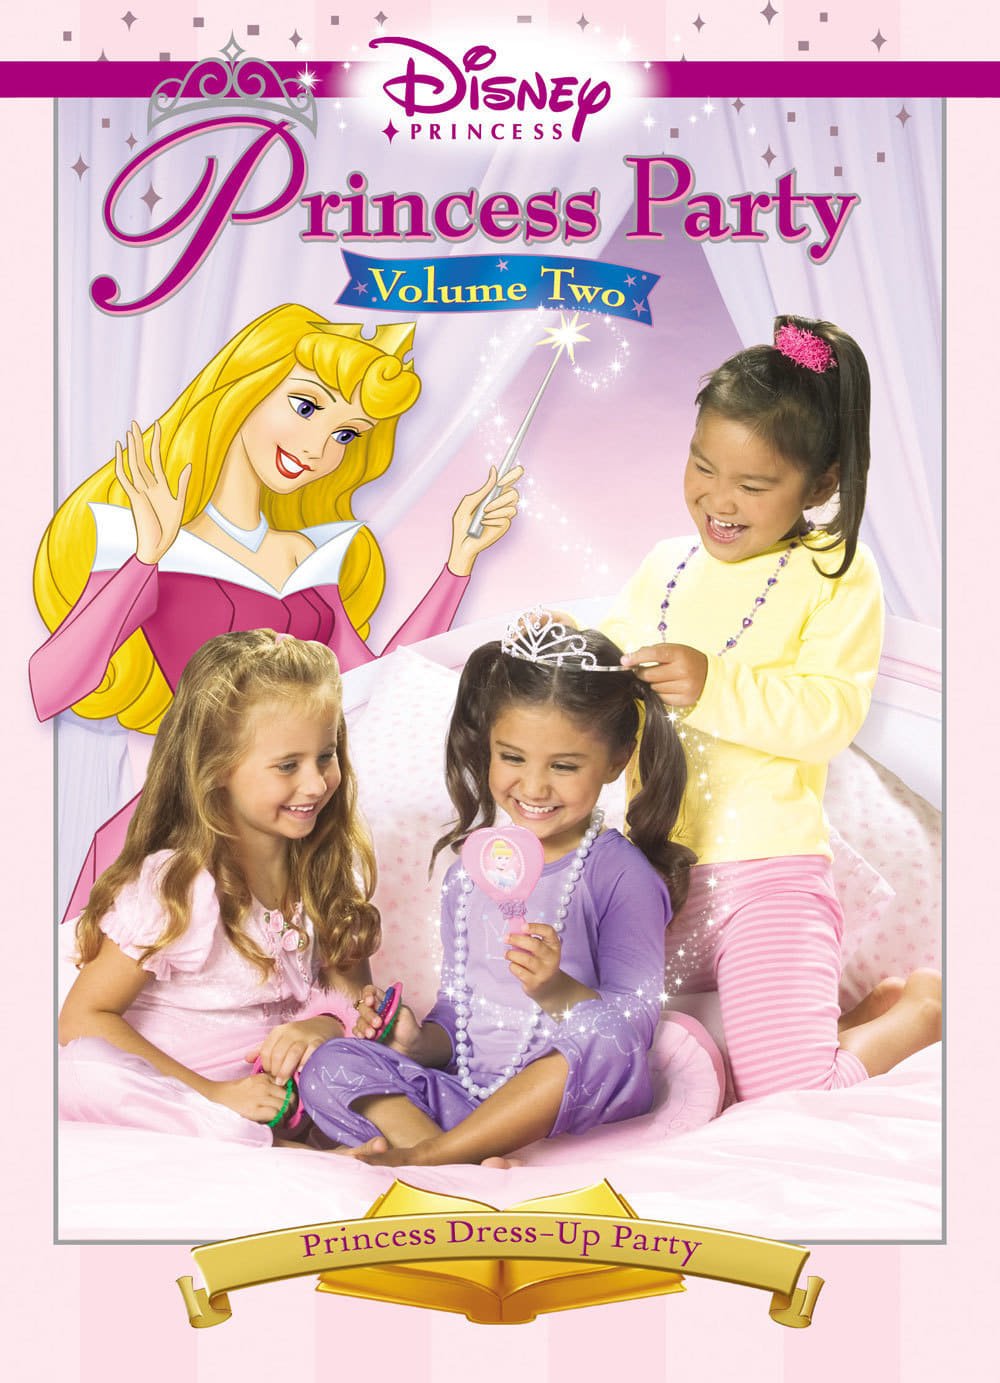 Disney Princess Party: Vol. 2: The Ultimate Princess Pajama Jam!